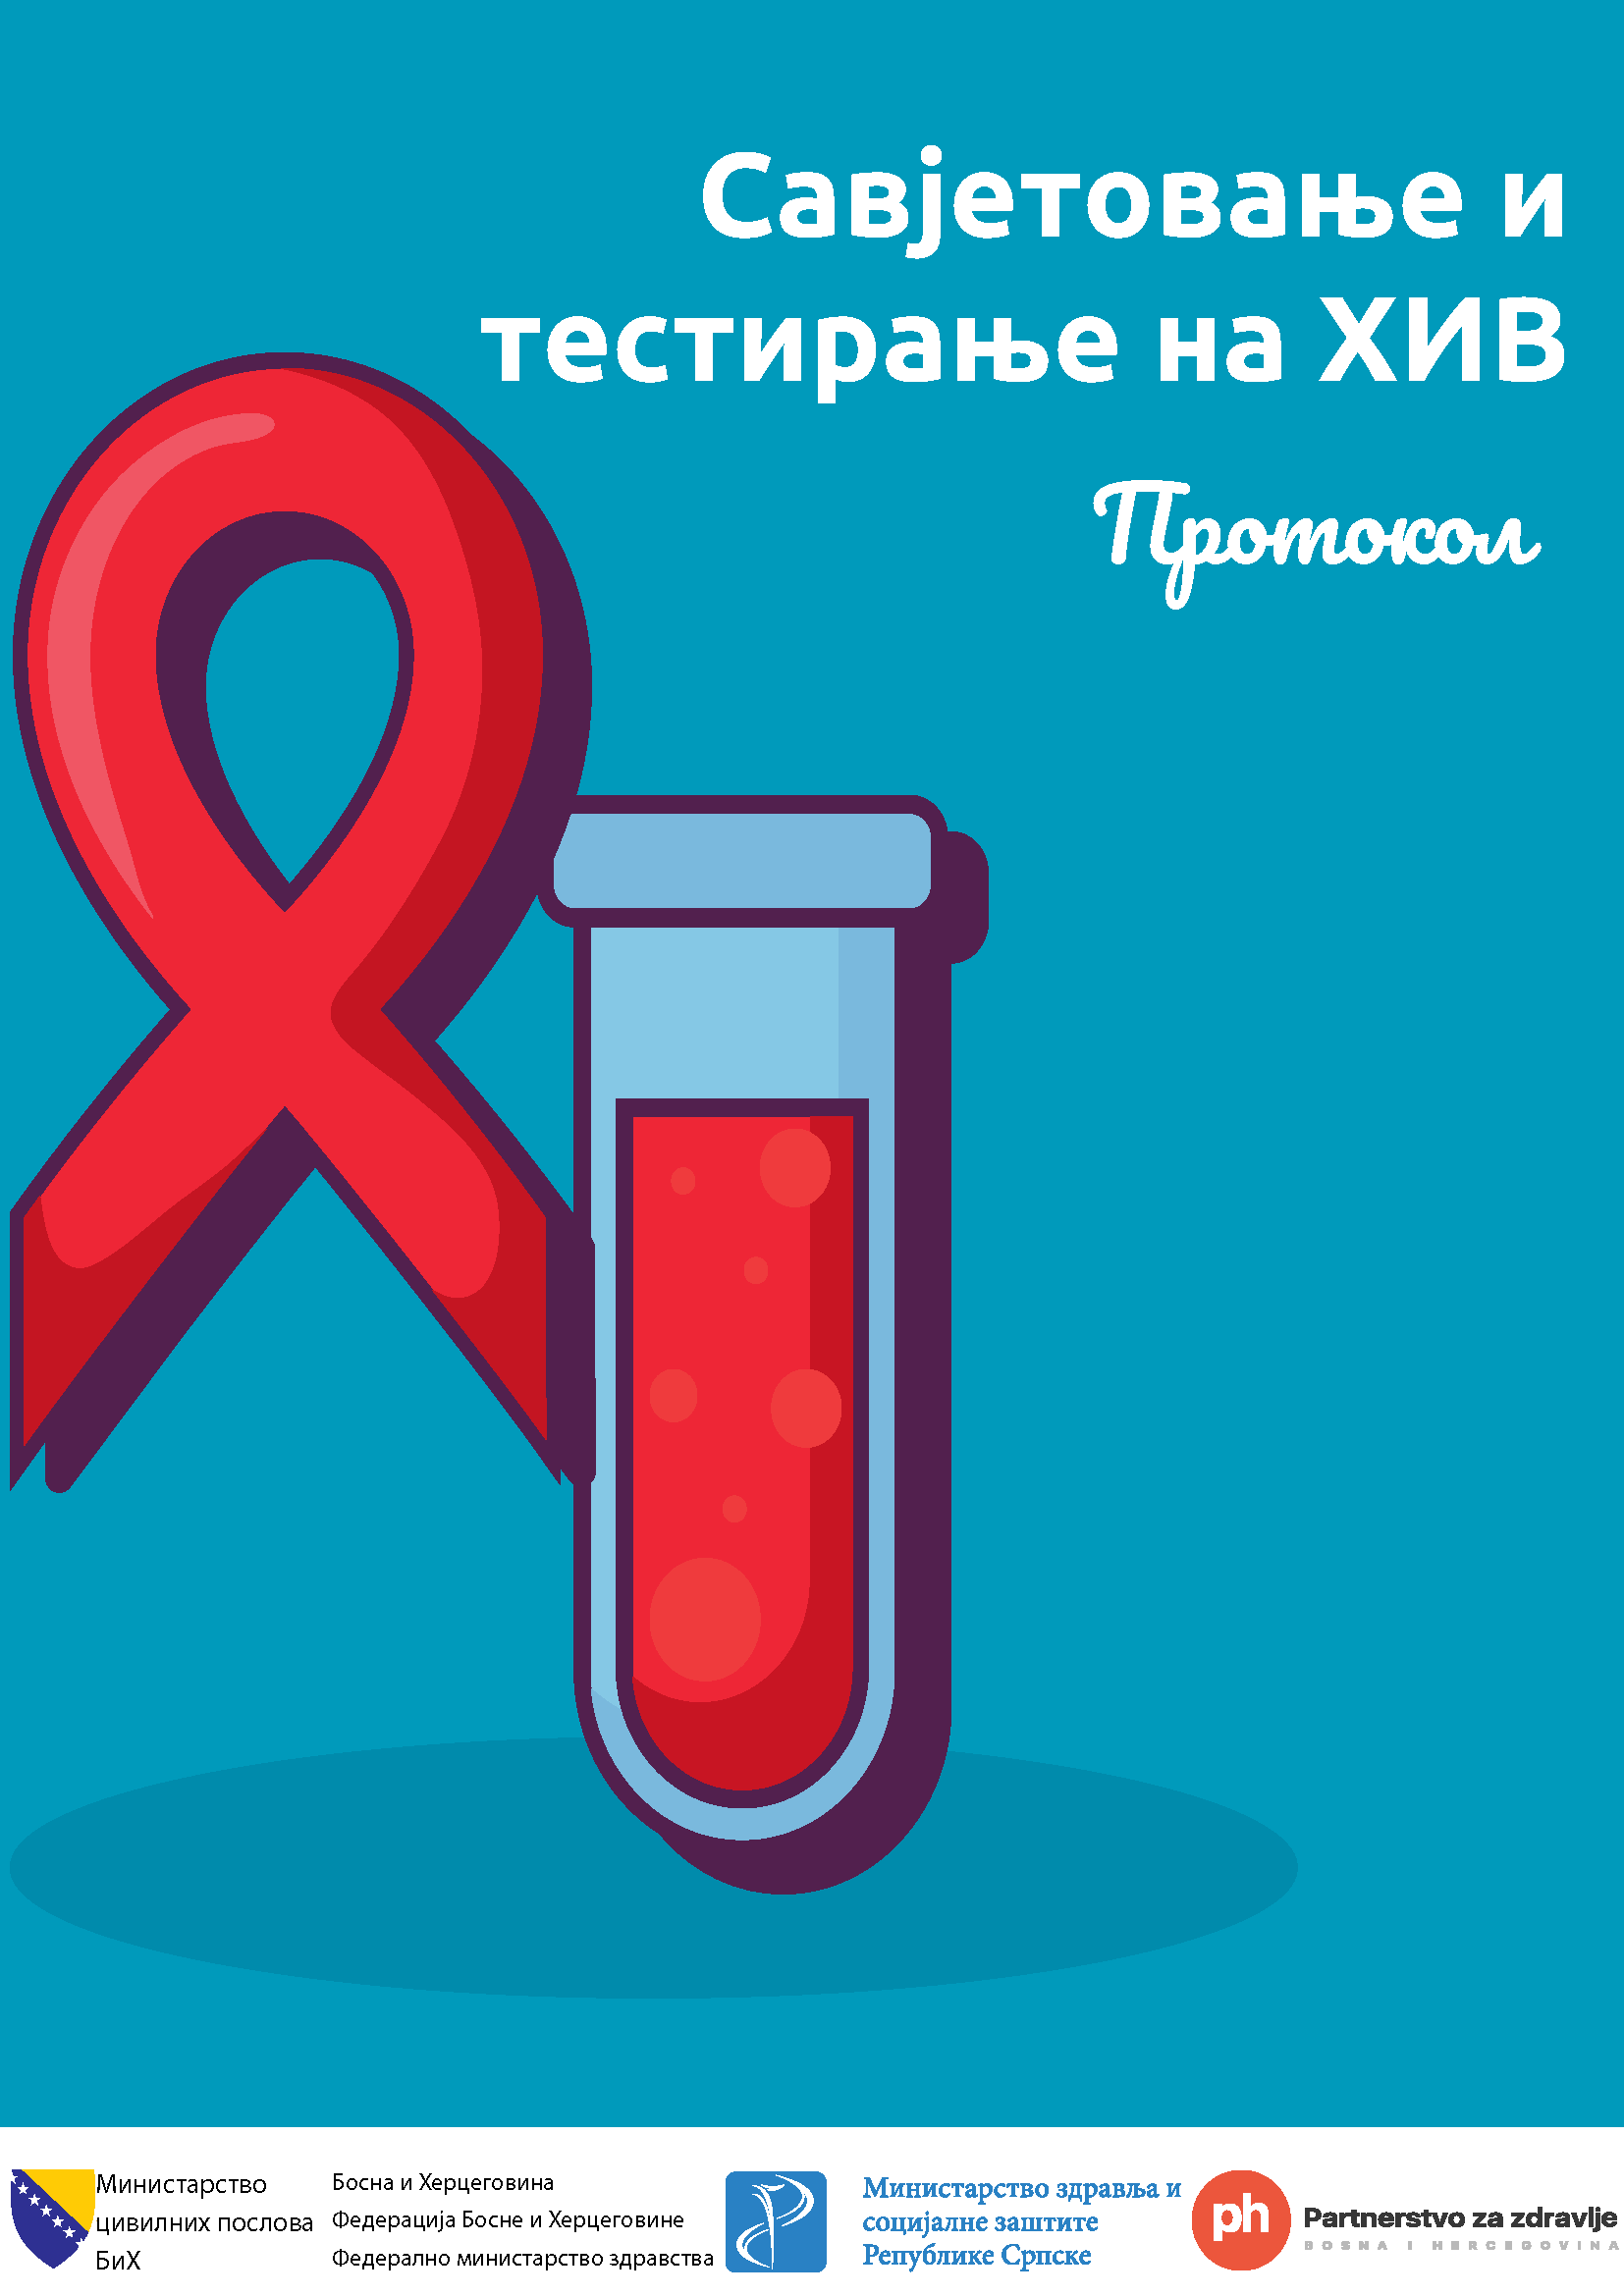 Протокол - Савјетовање и тестирање на ХИВ - Српски језик, 2020. година